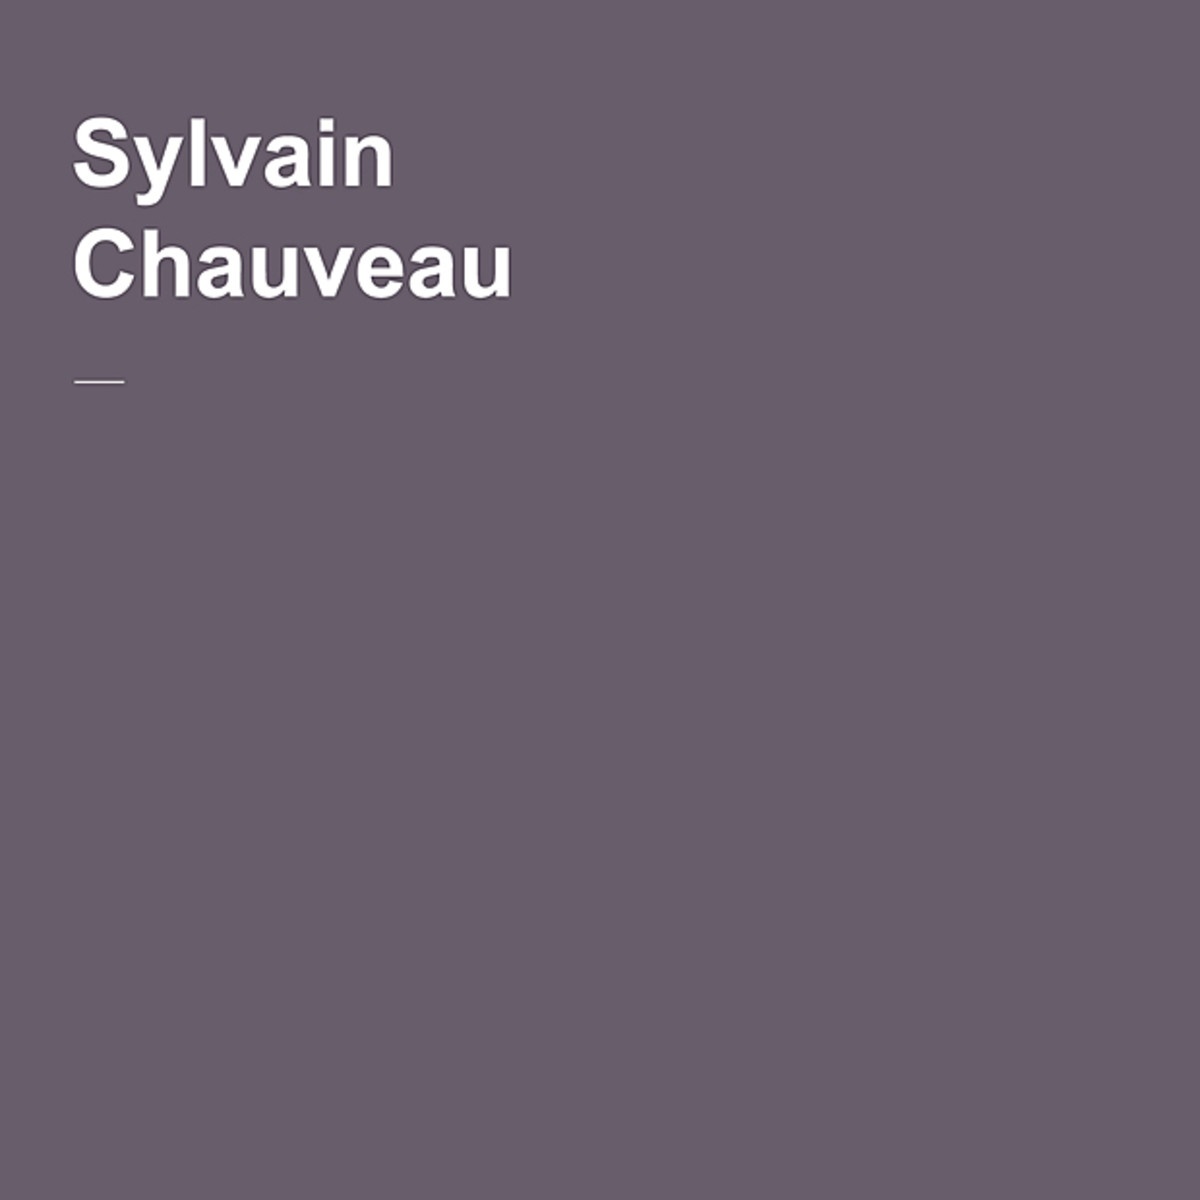 Heart Beating (Sylvain Chauveau Remix)